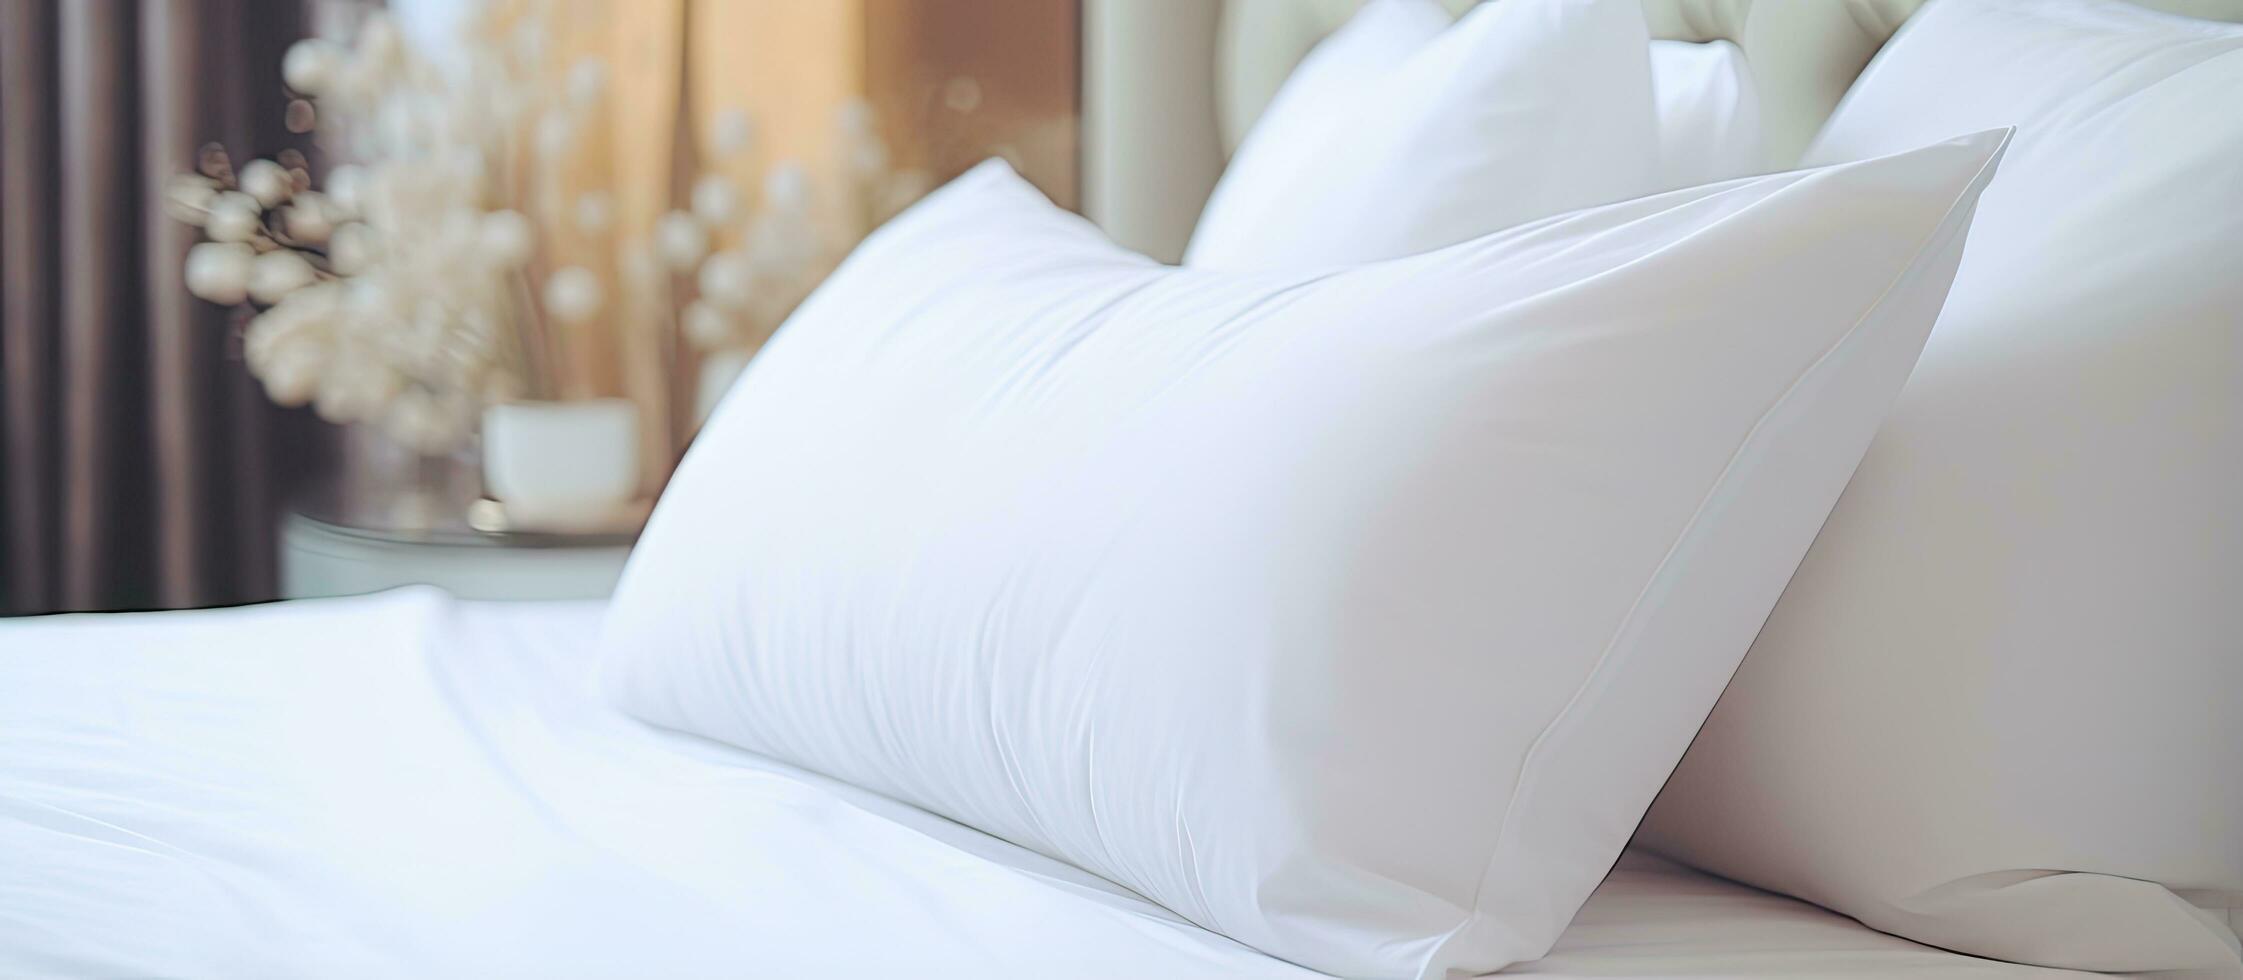 hotell sovrum med en vit kudde på de säng skapande en bekväm interiör dekoration foto